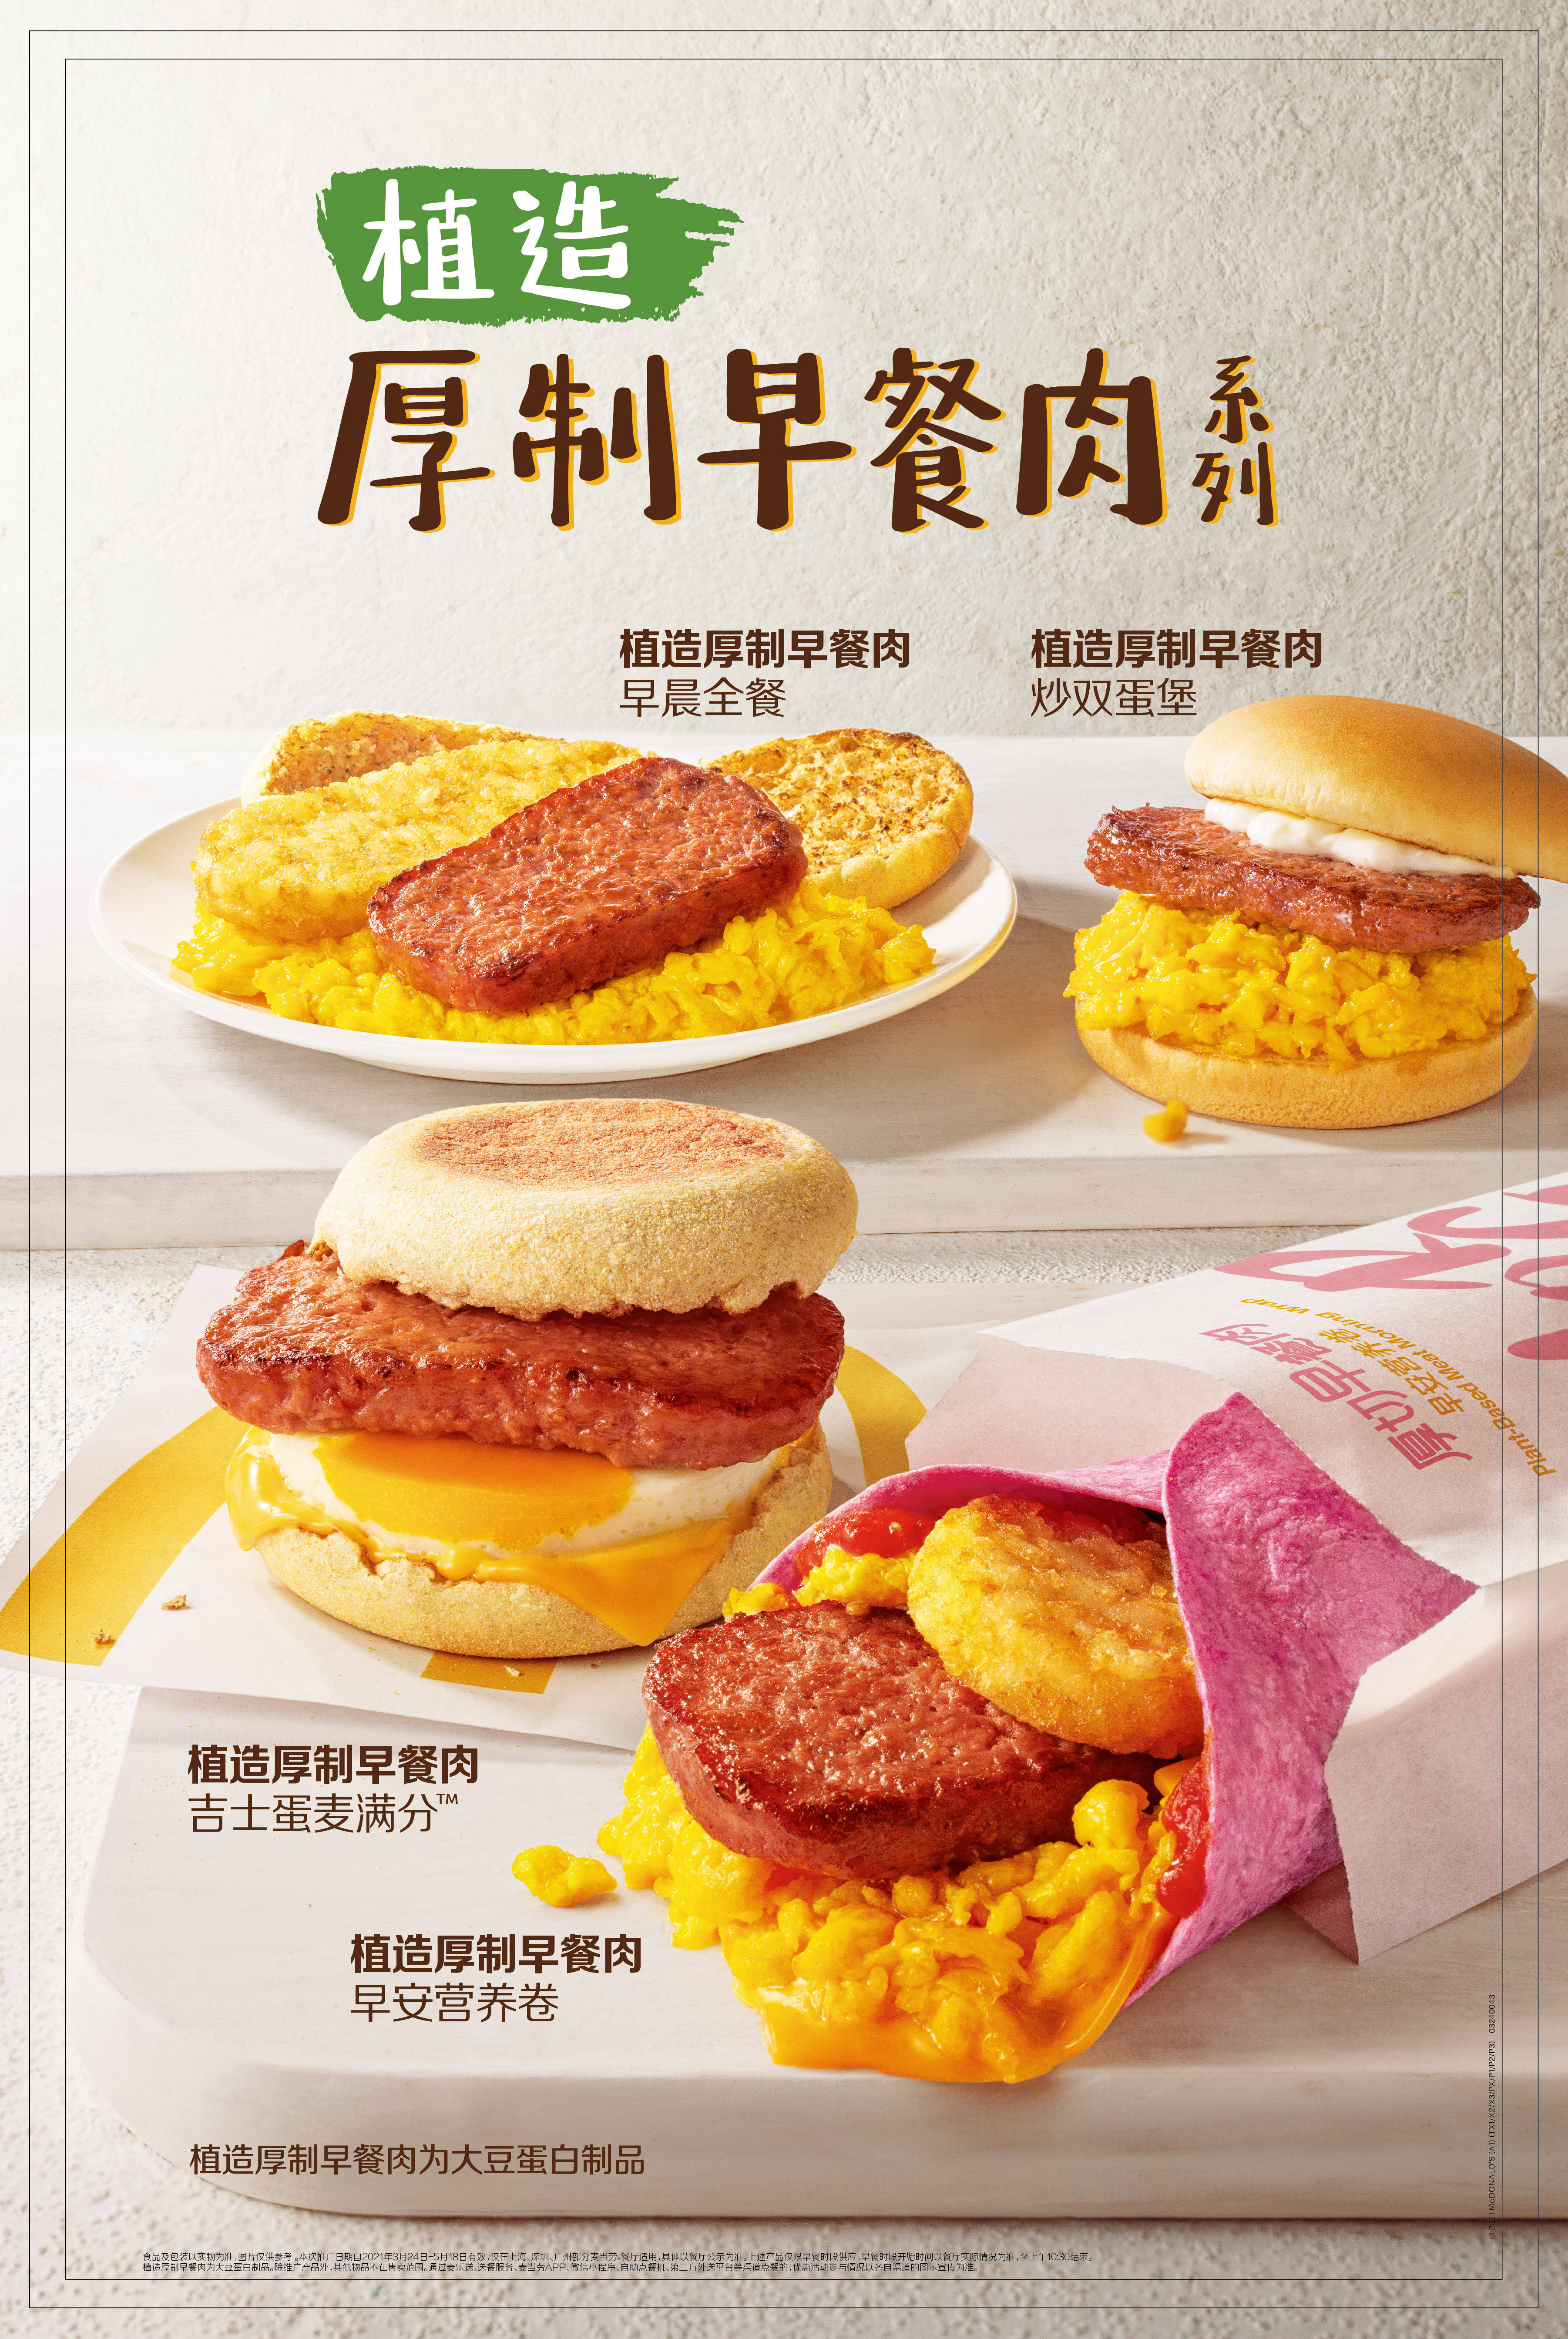 创新"植造厚制早餐肉系列"沪广深限时尝新_麦当劳